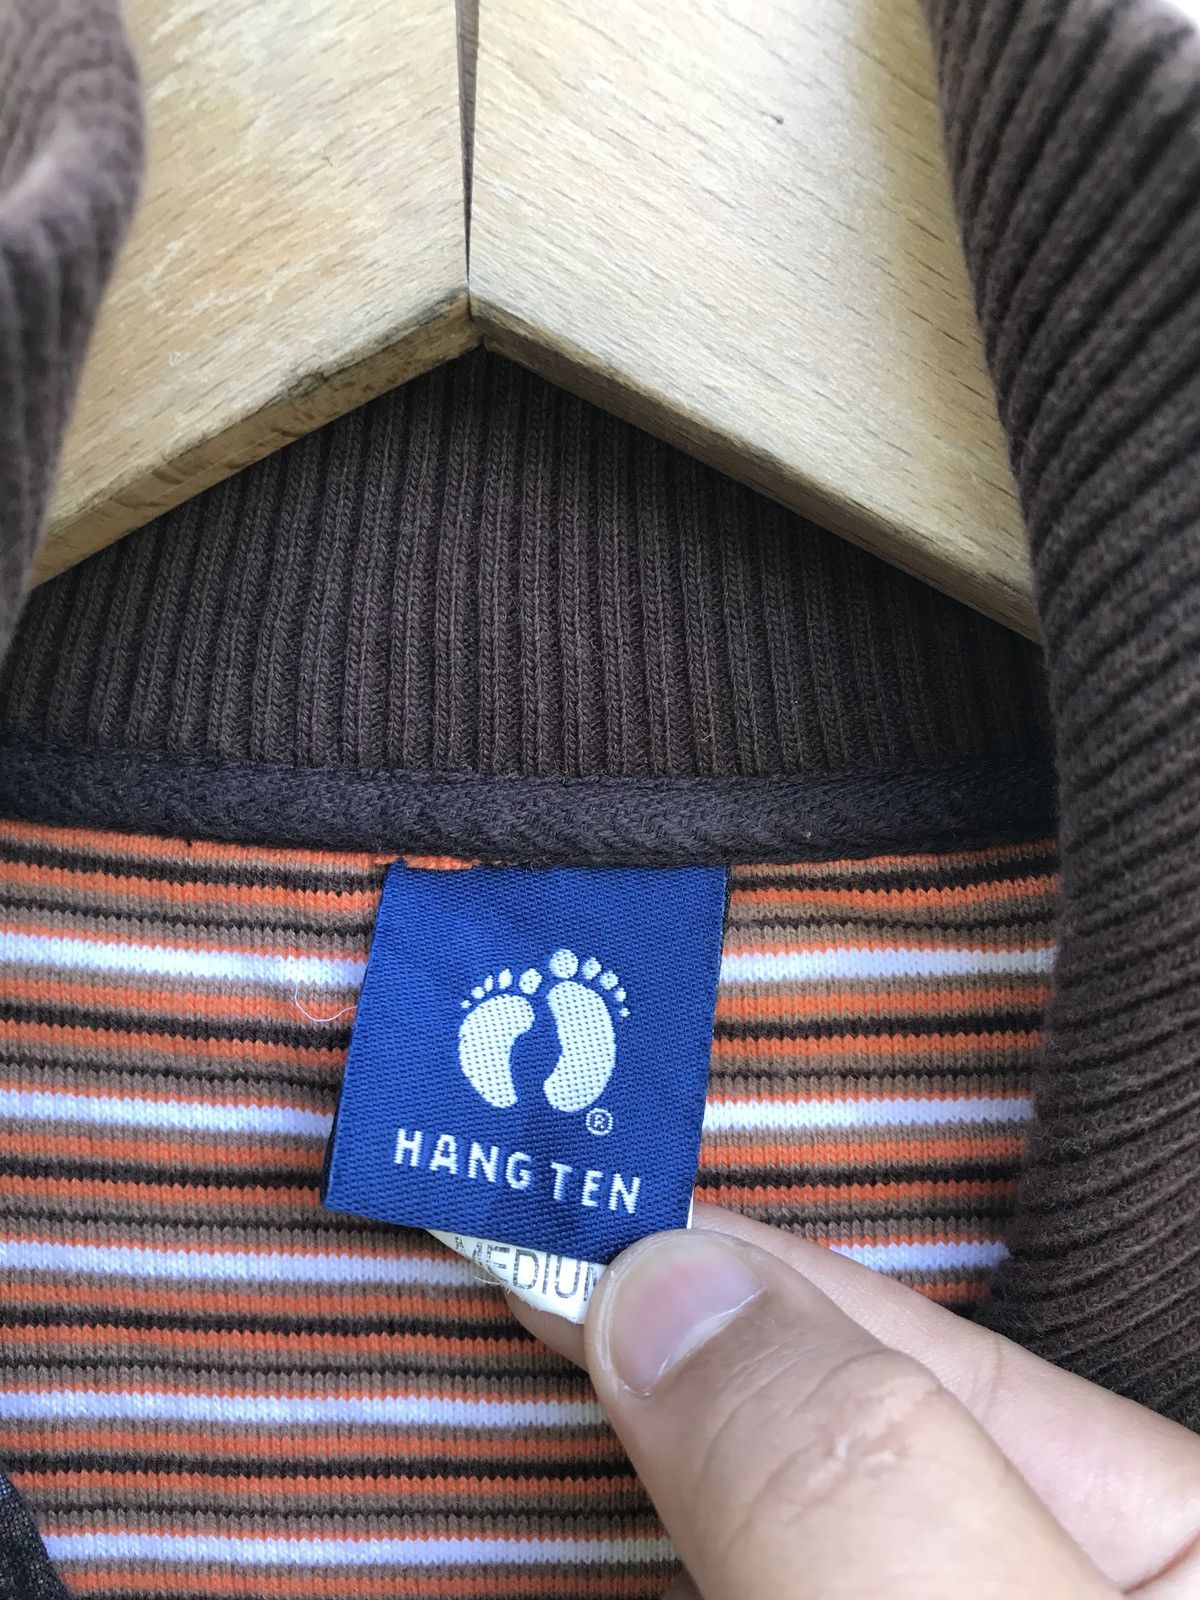 Hang Ten Hang Ten Striped Zipper Sweater Size US M / EU 48-50 / 2 - 3 Thumbnail